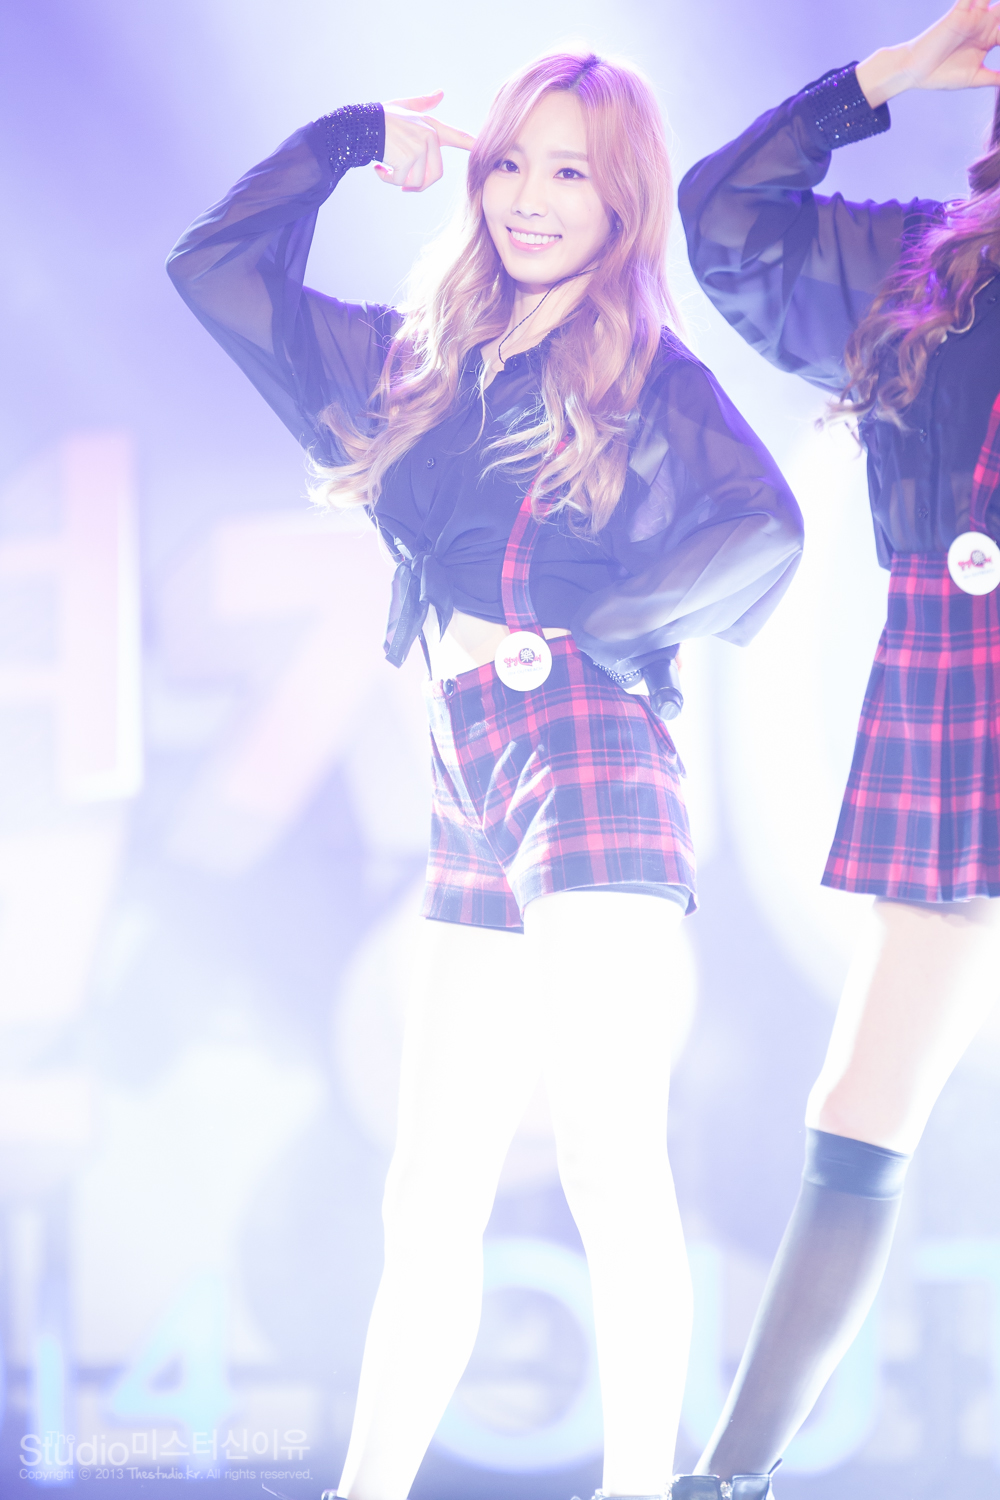 [PIC][11-11-2014]TaeTiSeo biểu diễn tại "Passion Concert 2014" ở Seoul Jamsil Gymnasium vào tối nay - Page 4 260423495462E2023347D5